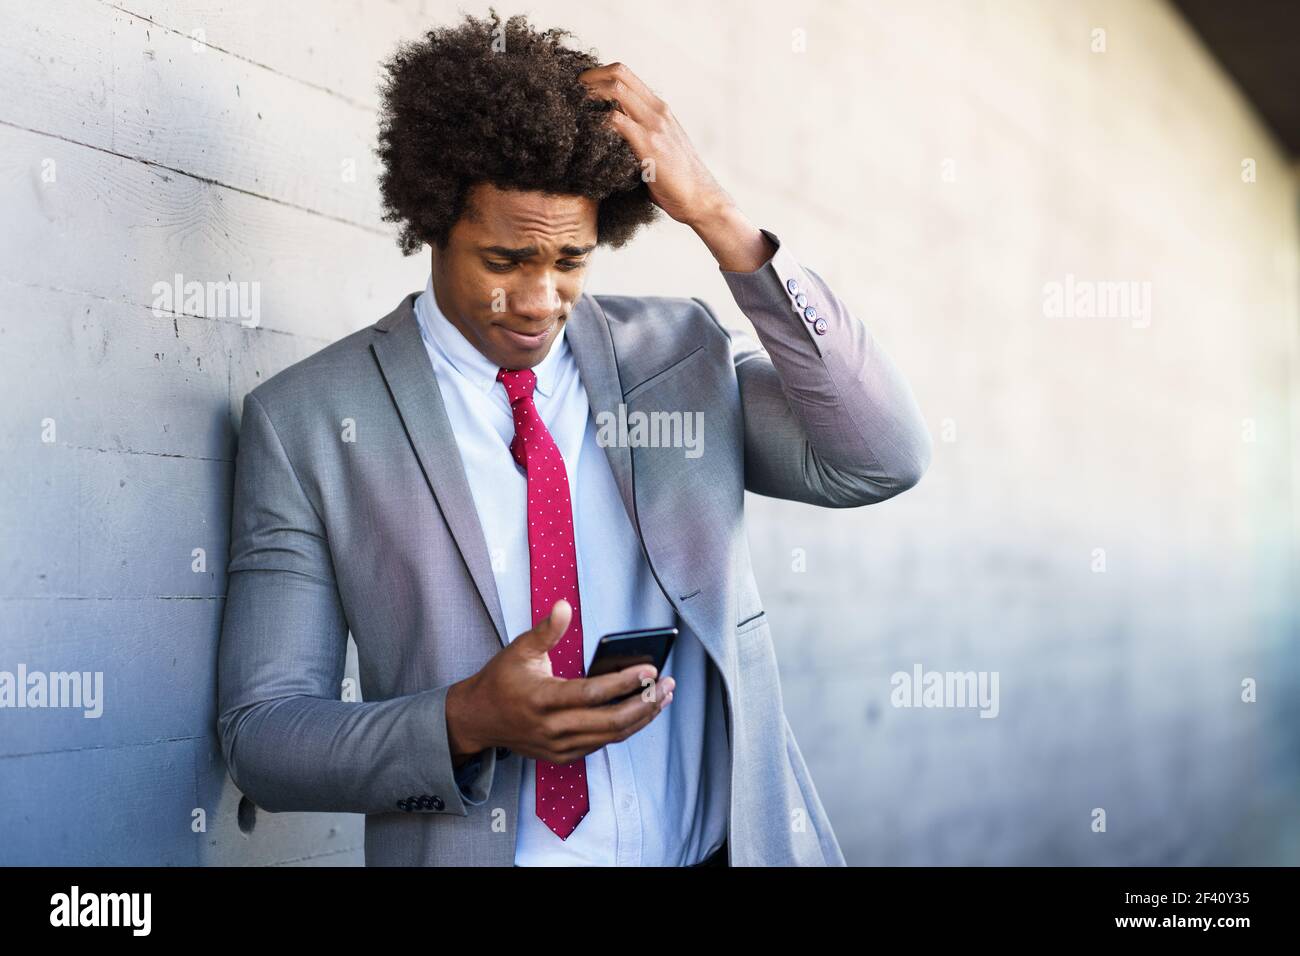 Inquiet homme d'affaires noir utilisant son smartphone près d'un immeuble de bureaux. Homme avec cheveux afro.. J'avais peur que l'homme d'affaires de Black utilise son smartphone à l'extérieur. Banque D'Images